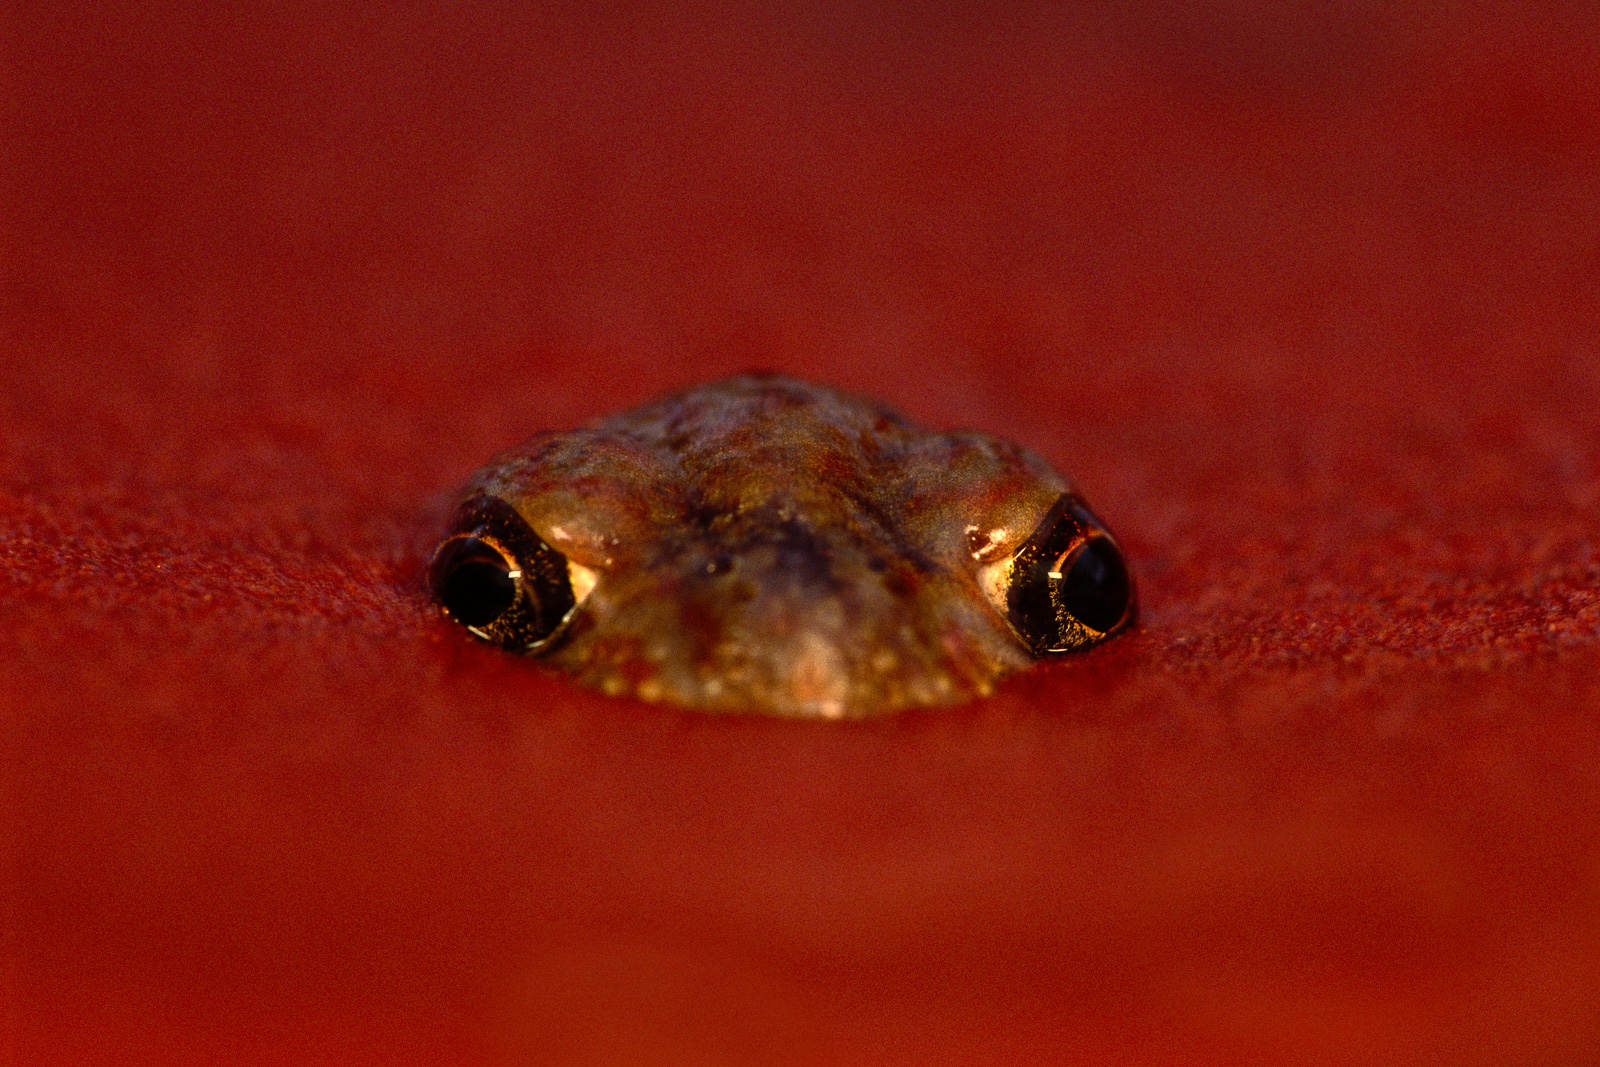 Desert spadefoot frog emerging from sand, Central Australia